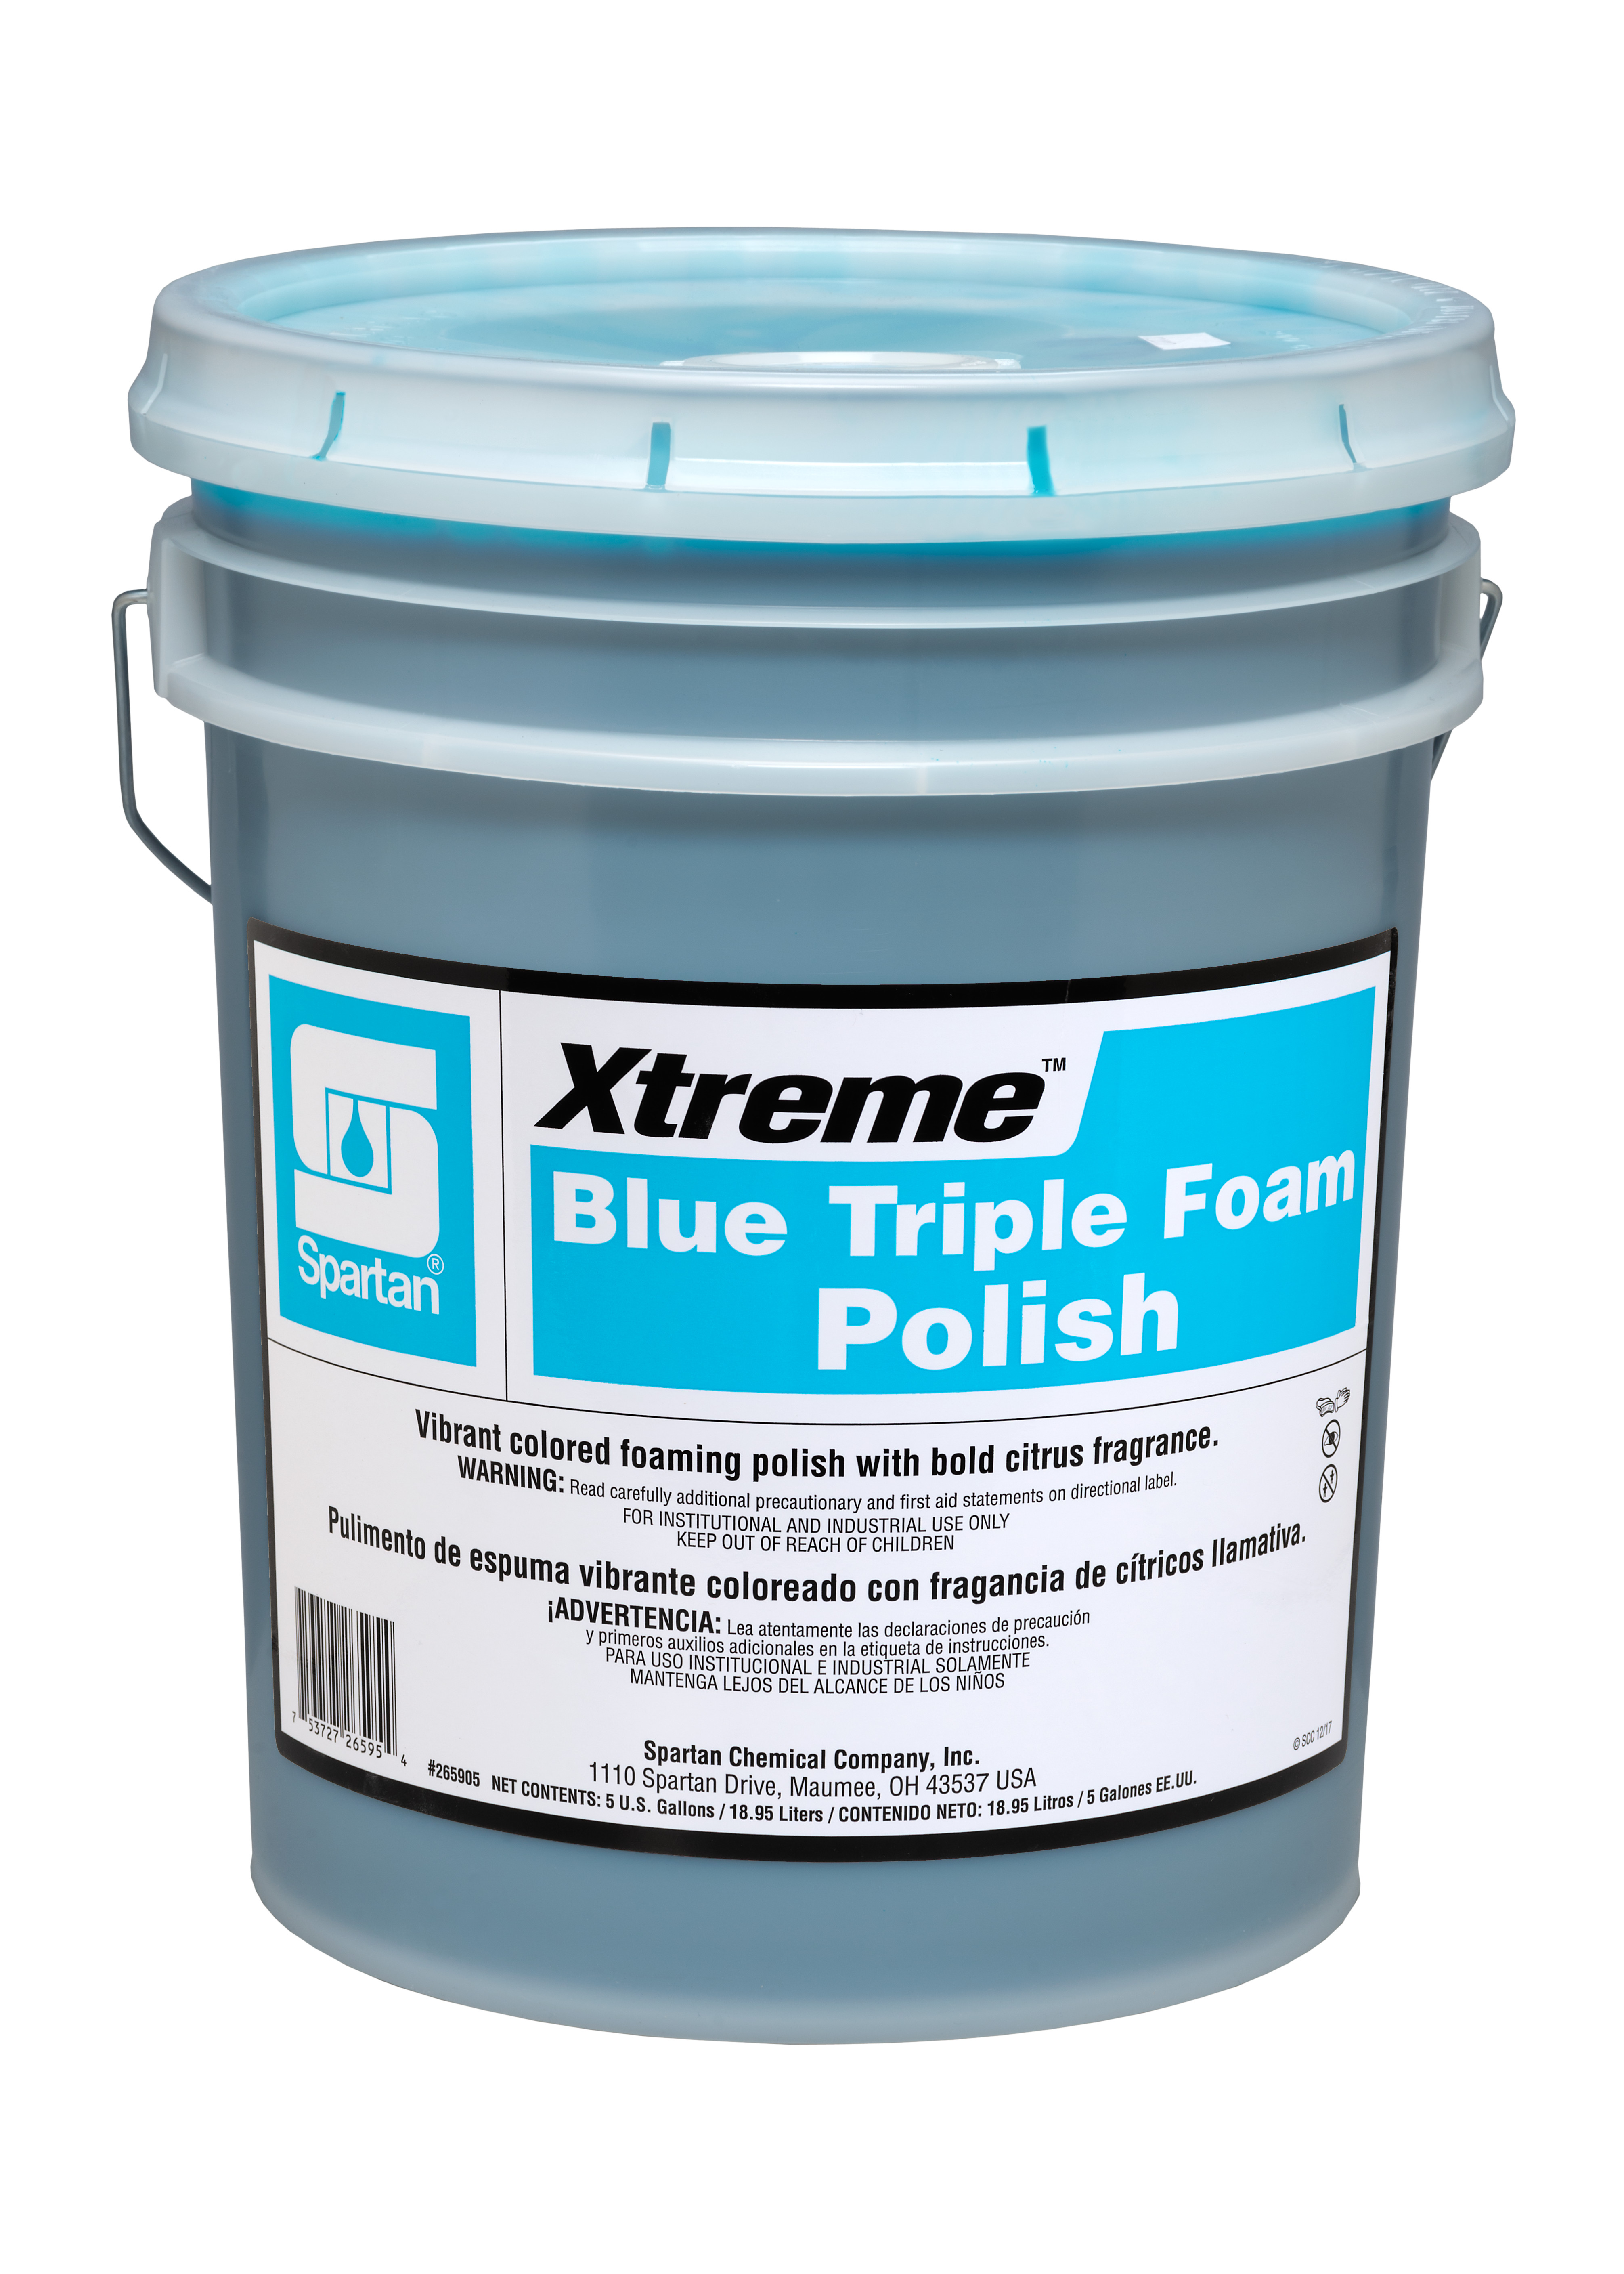 Spartan Chemical Company Xtreme Blue Triple Foam Polish, 5 GAL PAIL